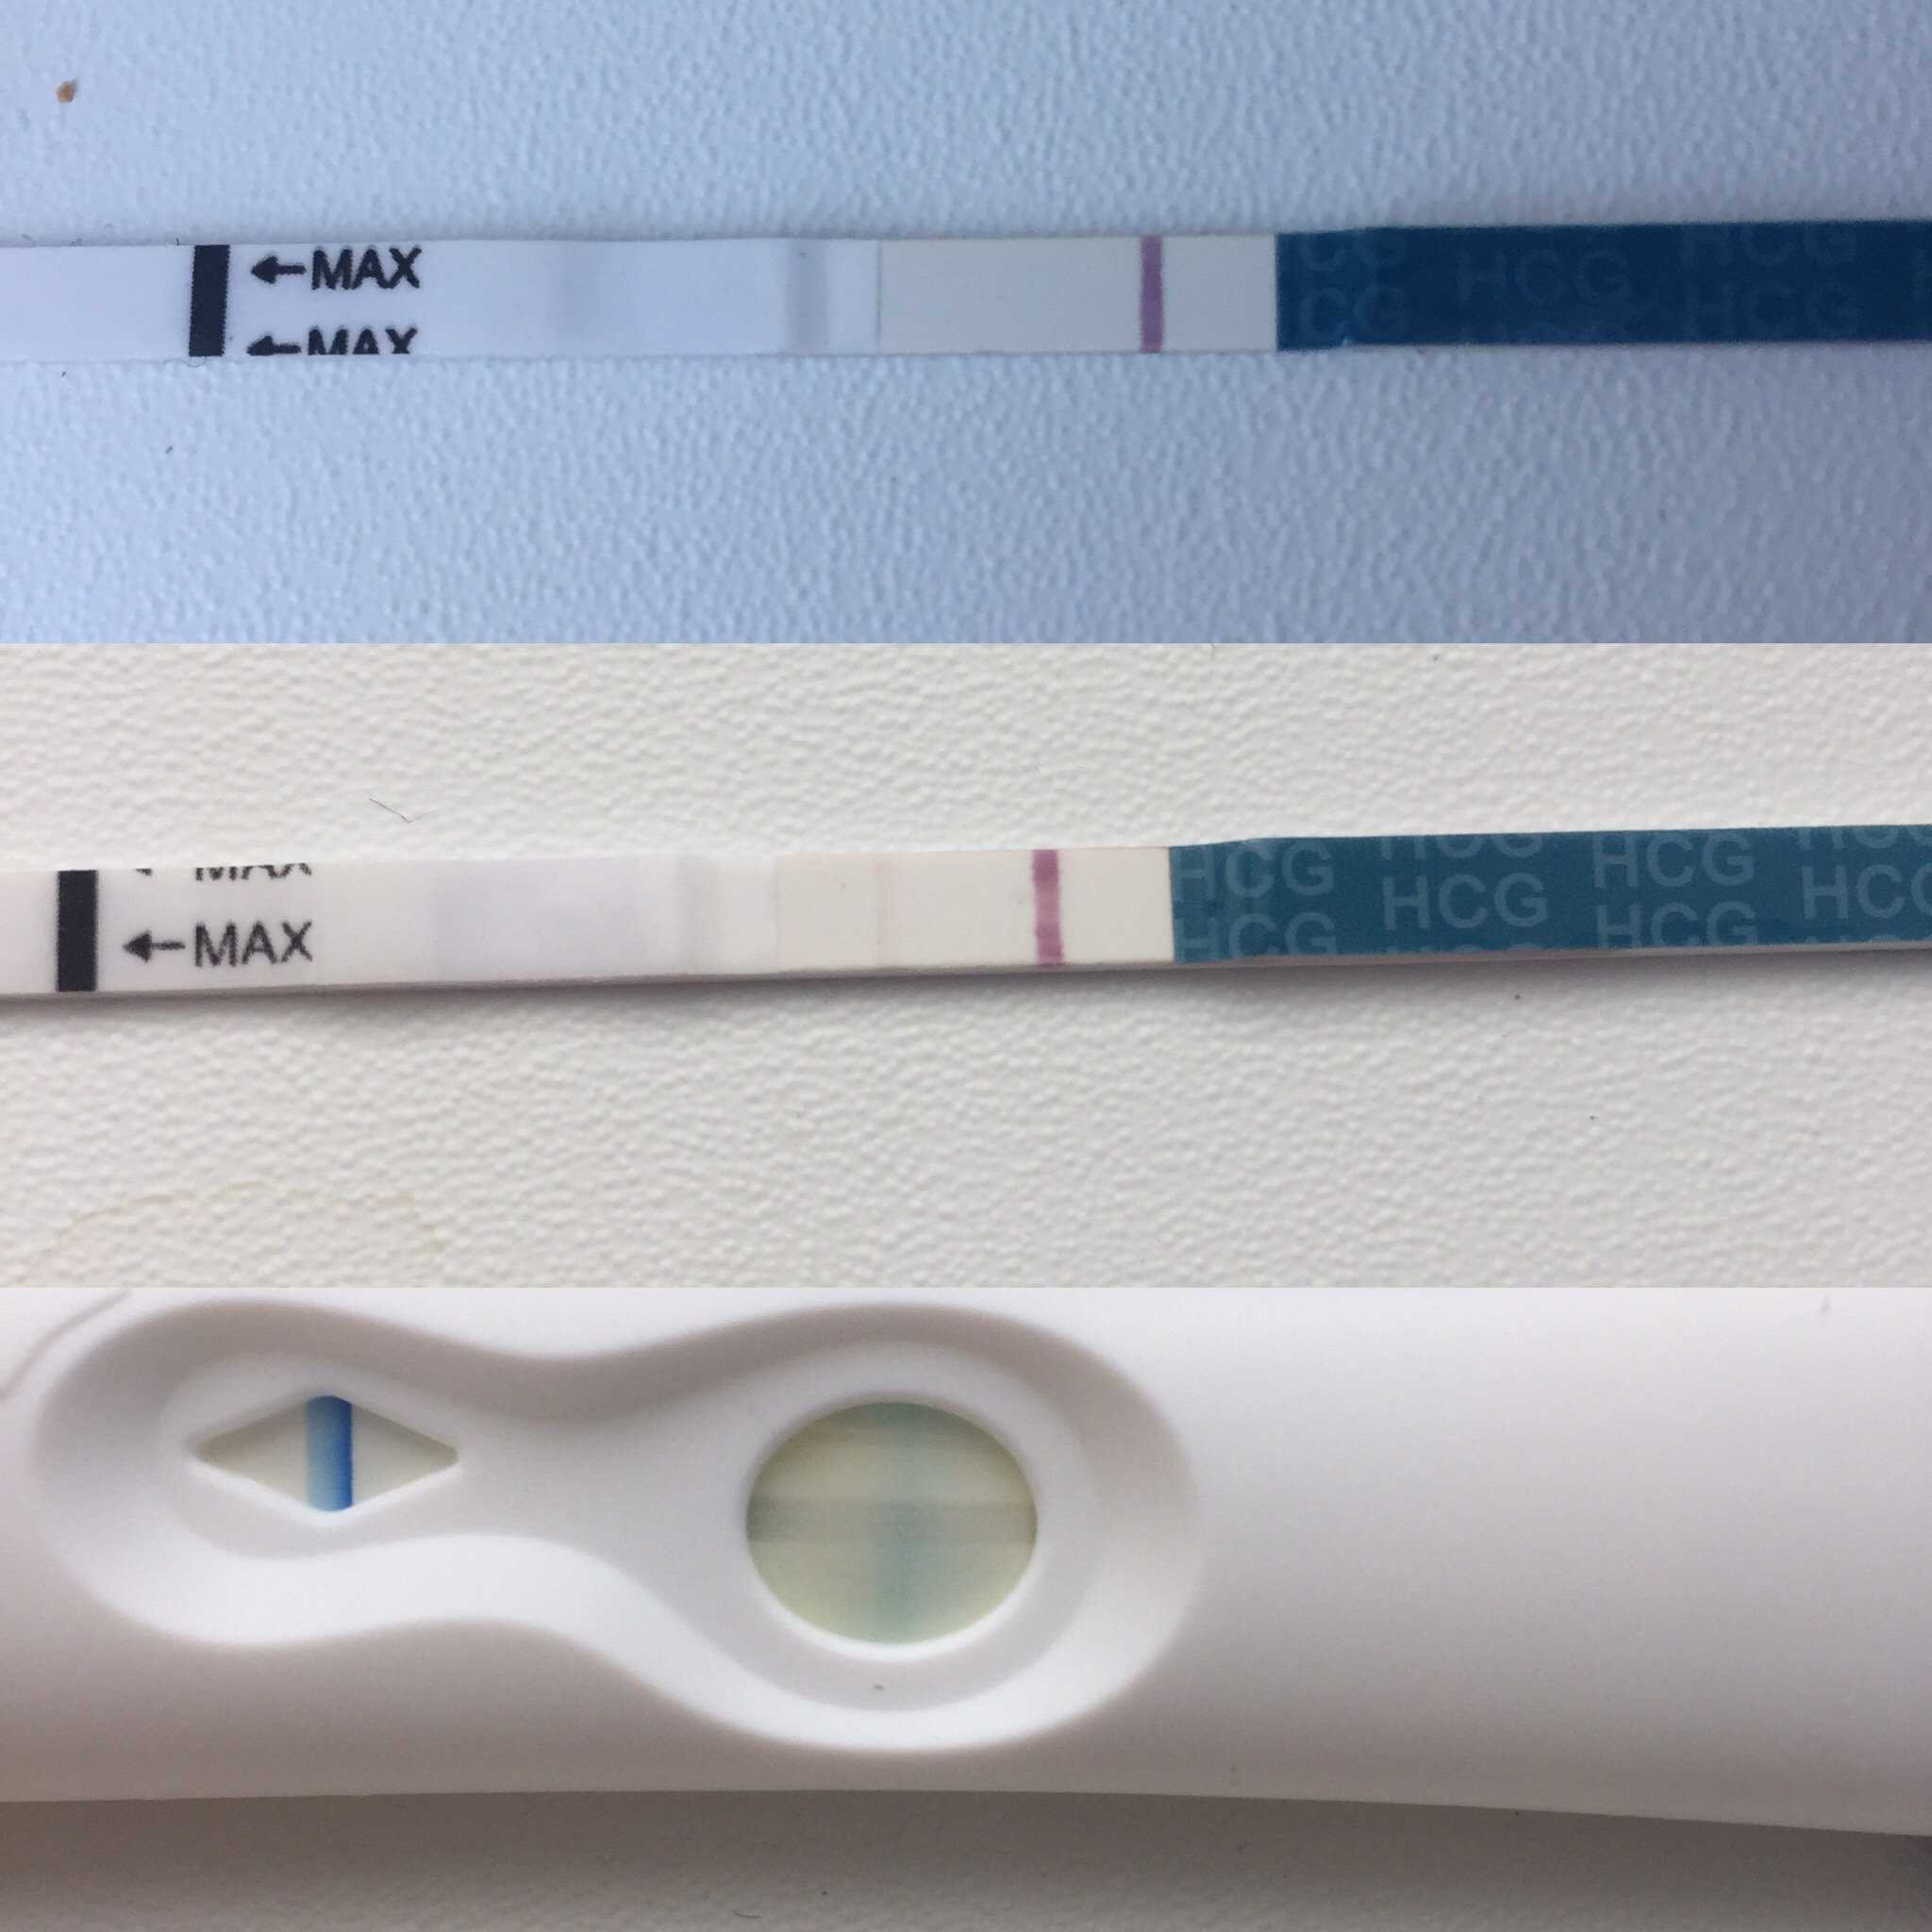 Тест показал еле вторую полоску. Тест на беременность эвитест слабая вторая полоска. Эвитест 2 полоска бледнее. Контрольная полоска бледнее тестовой Evitest. Беременность вторая полоска бледная.